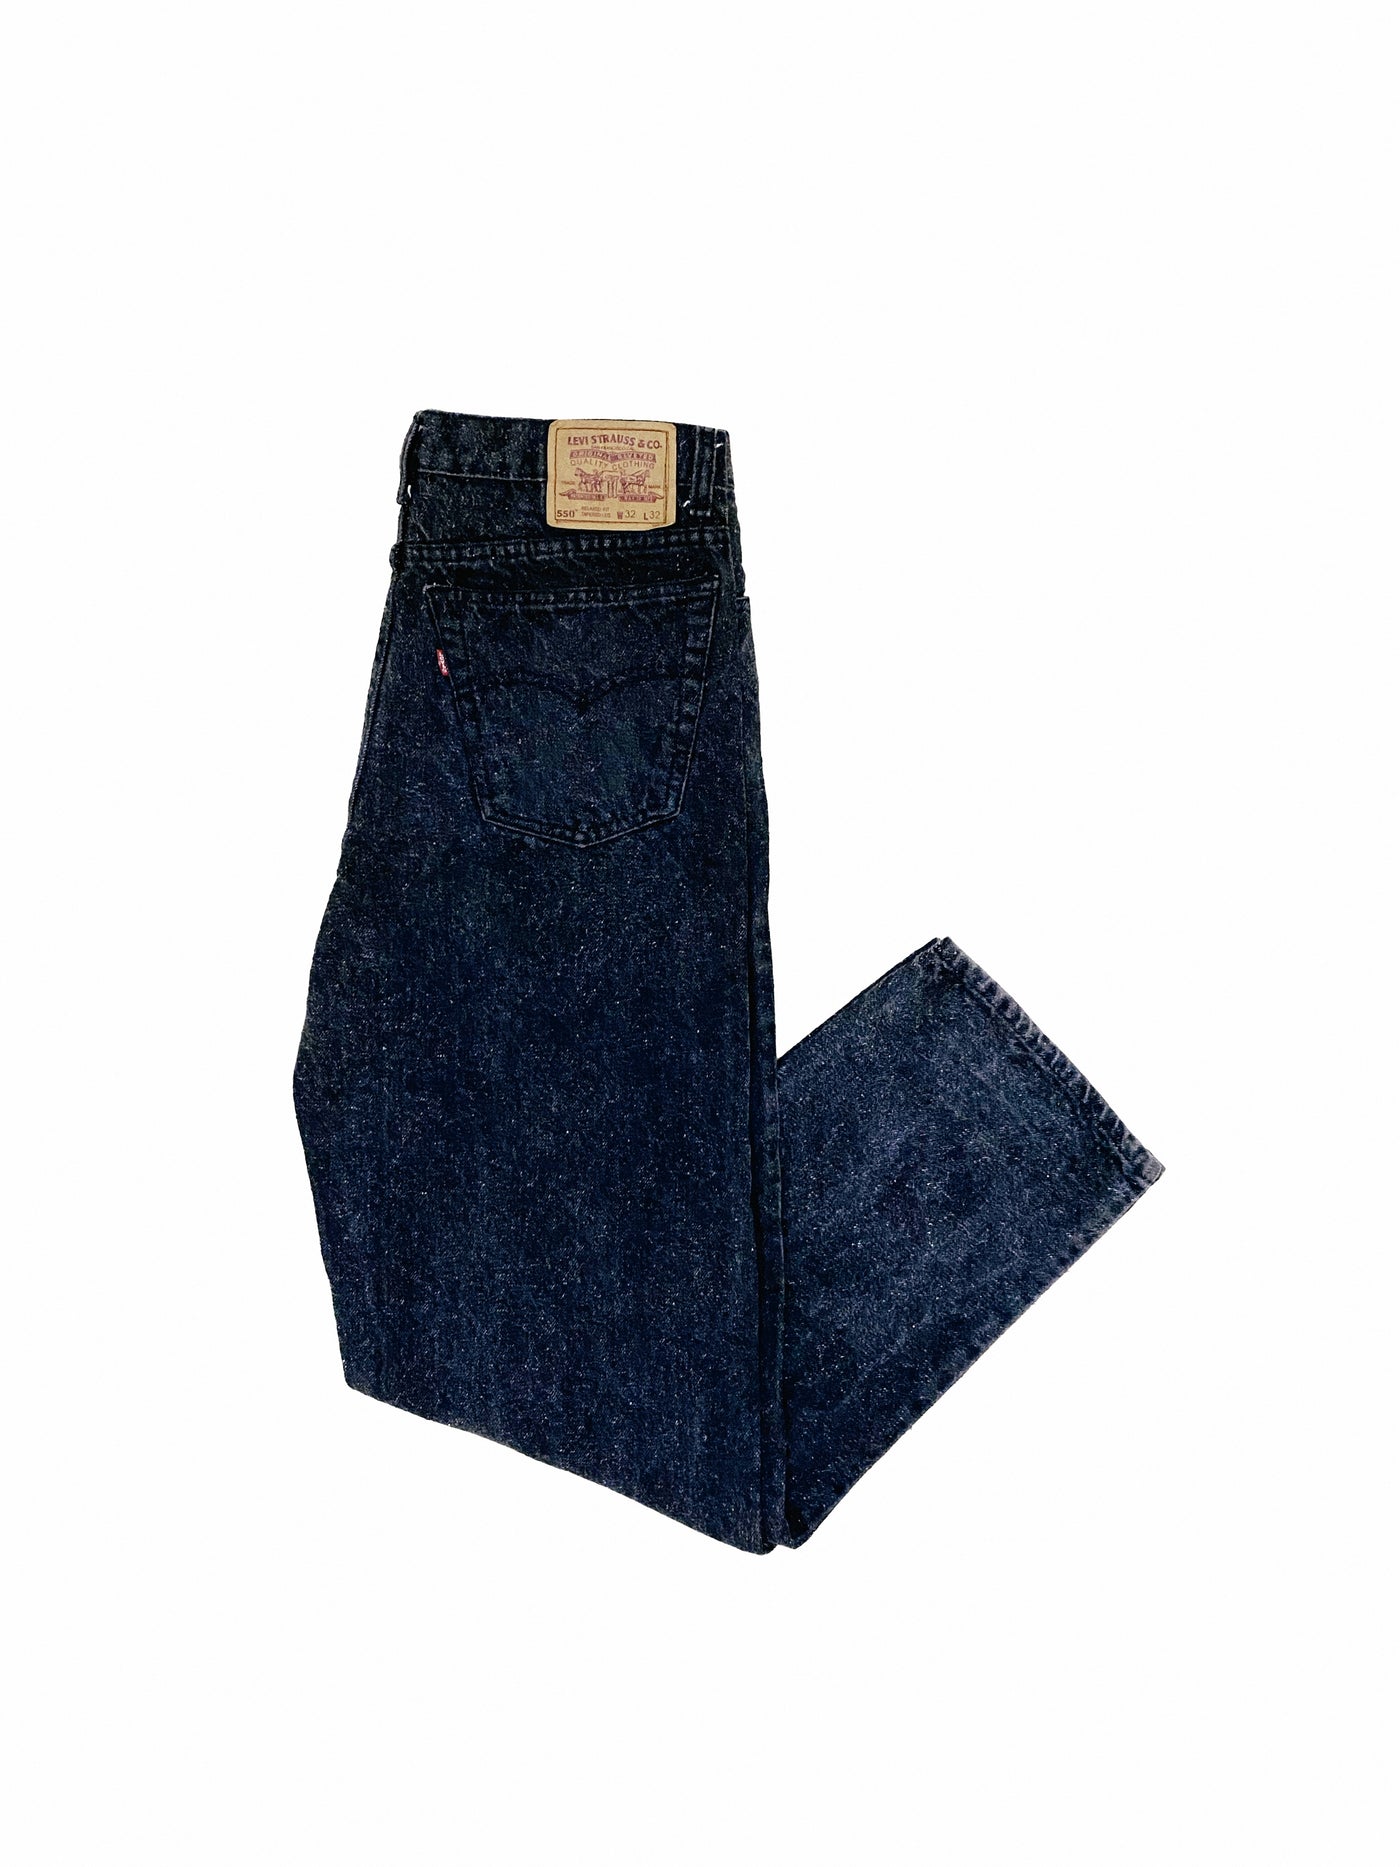 Vintage 90s Levi’s 550 100% Cotton Jeans